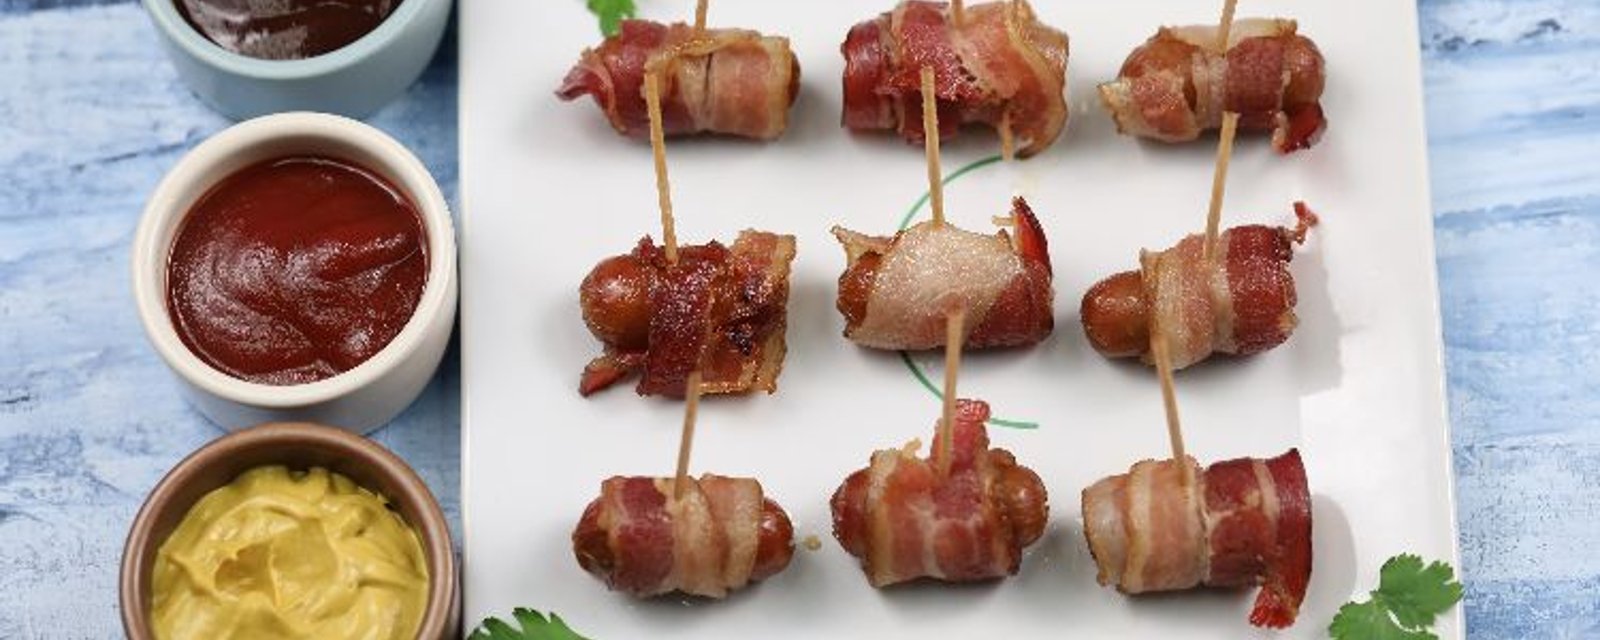 Il met des mini-saucisses enrobées de bacon dans sa mijoteuse afin de créer la meilleure entrée que vous aurez mangée